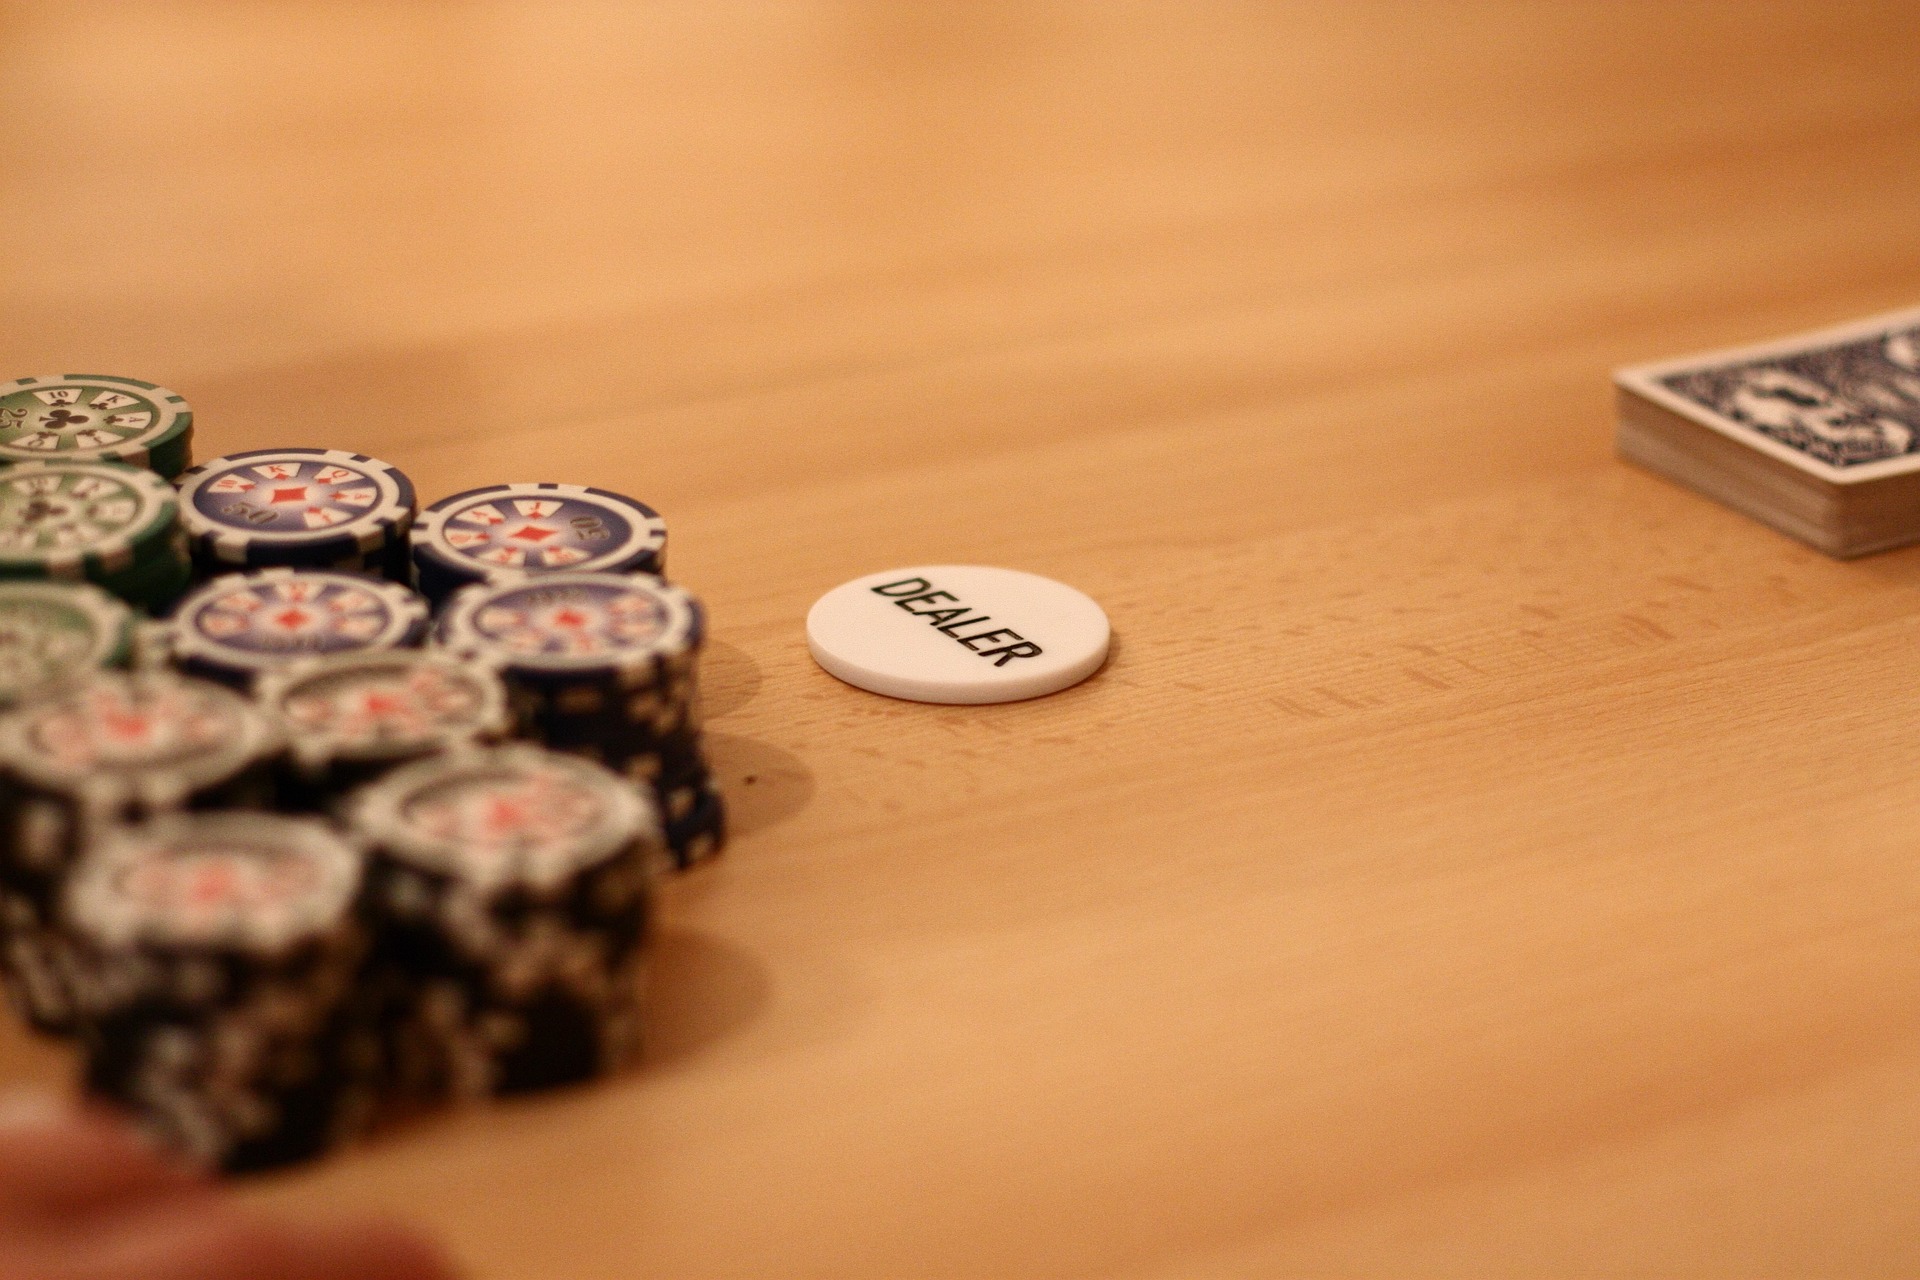 El enfoque de Texas Holdem es la versión de póker más popular